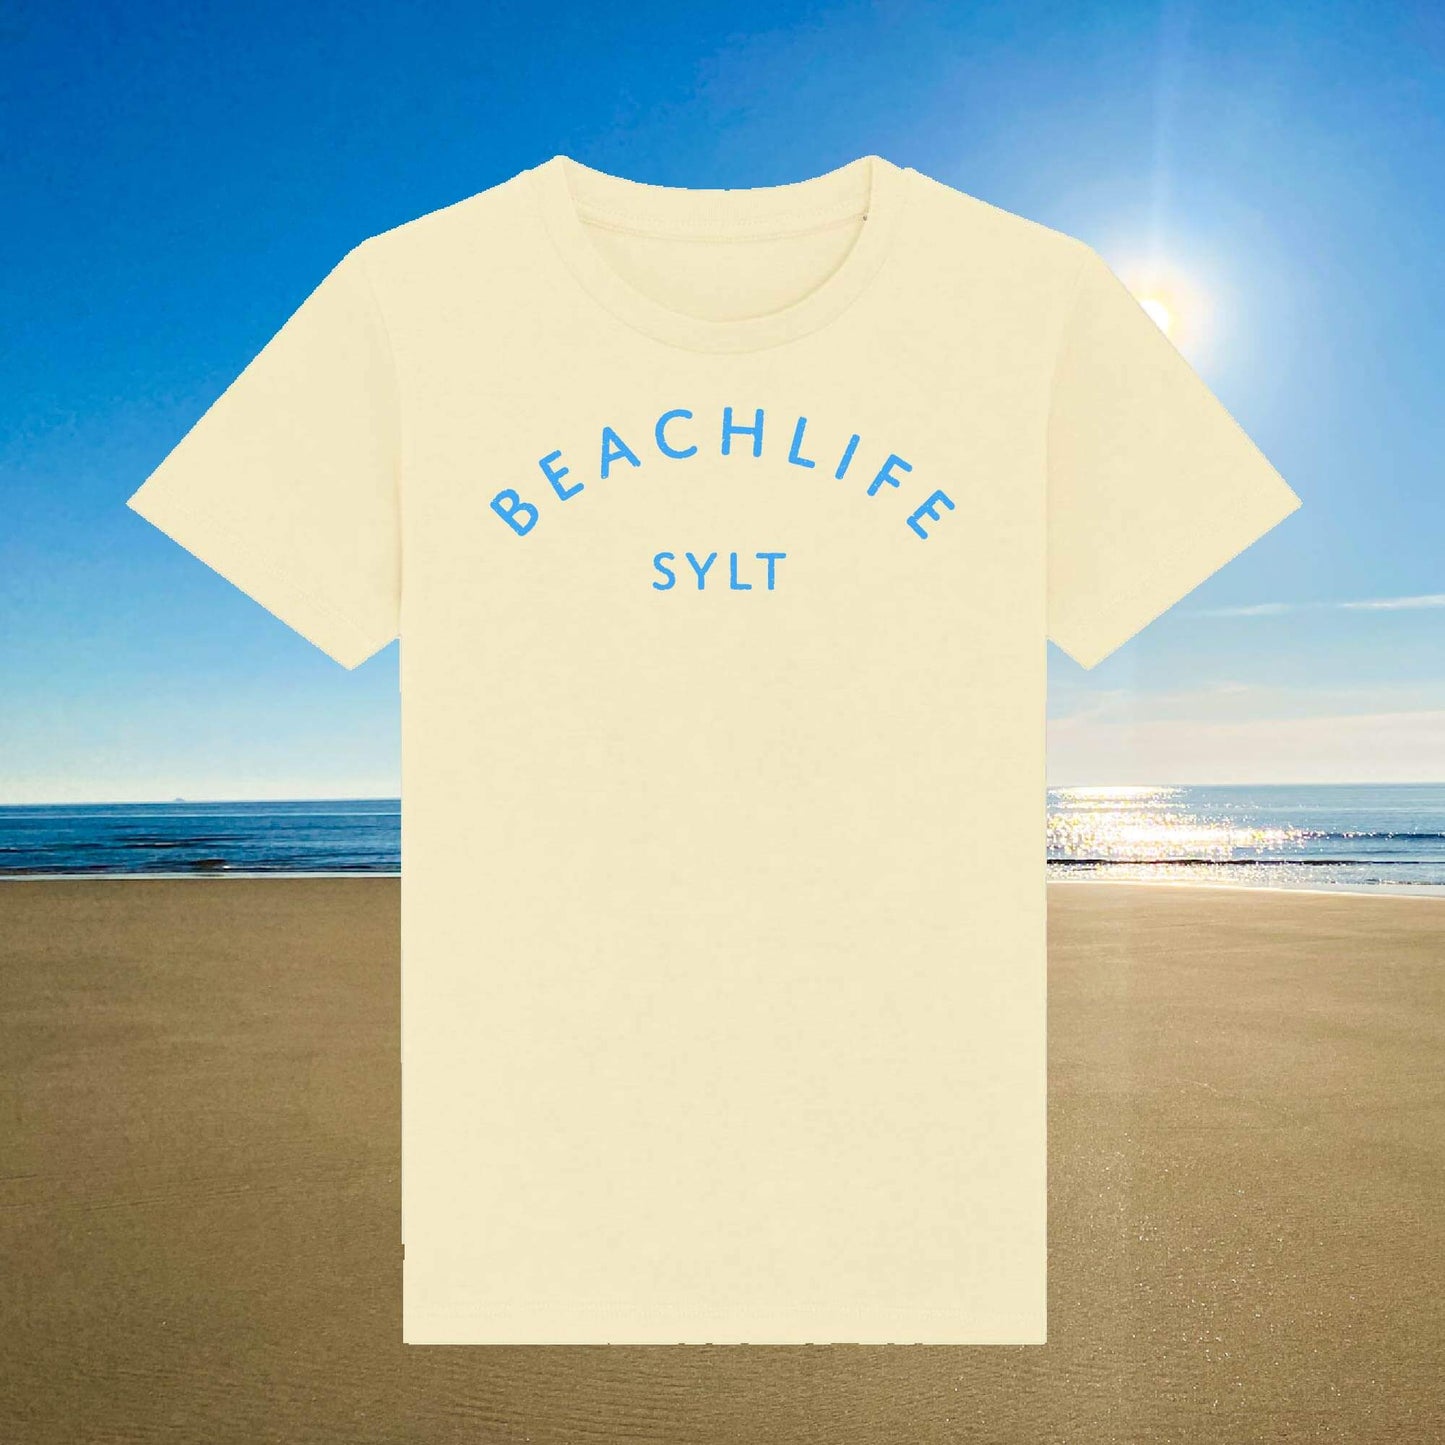 Hellgelbes Kinder T-Shirt aus Biobaumwolle mit blauem Beachlife Sylt Aufdruck.